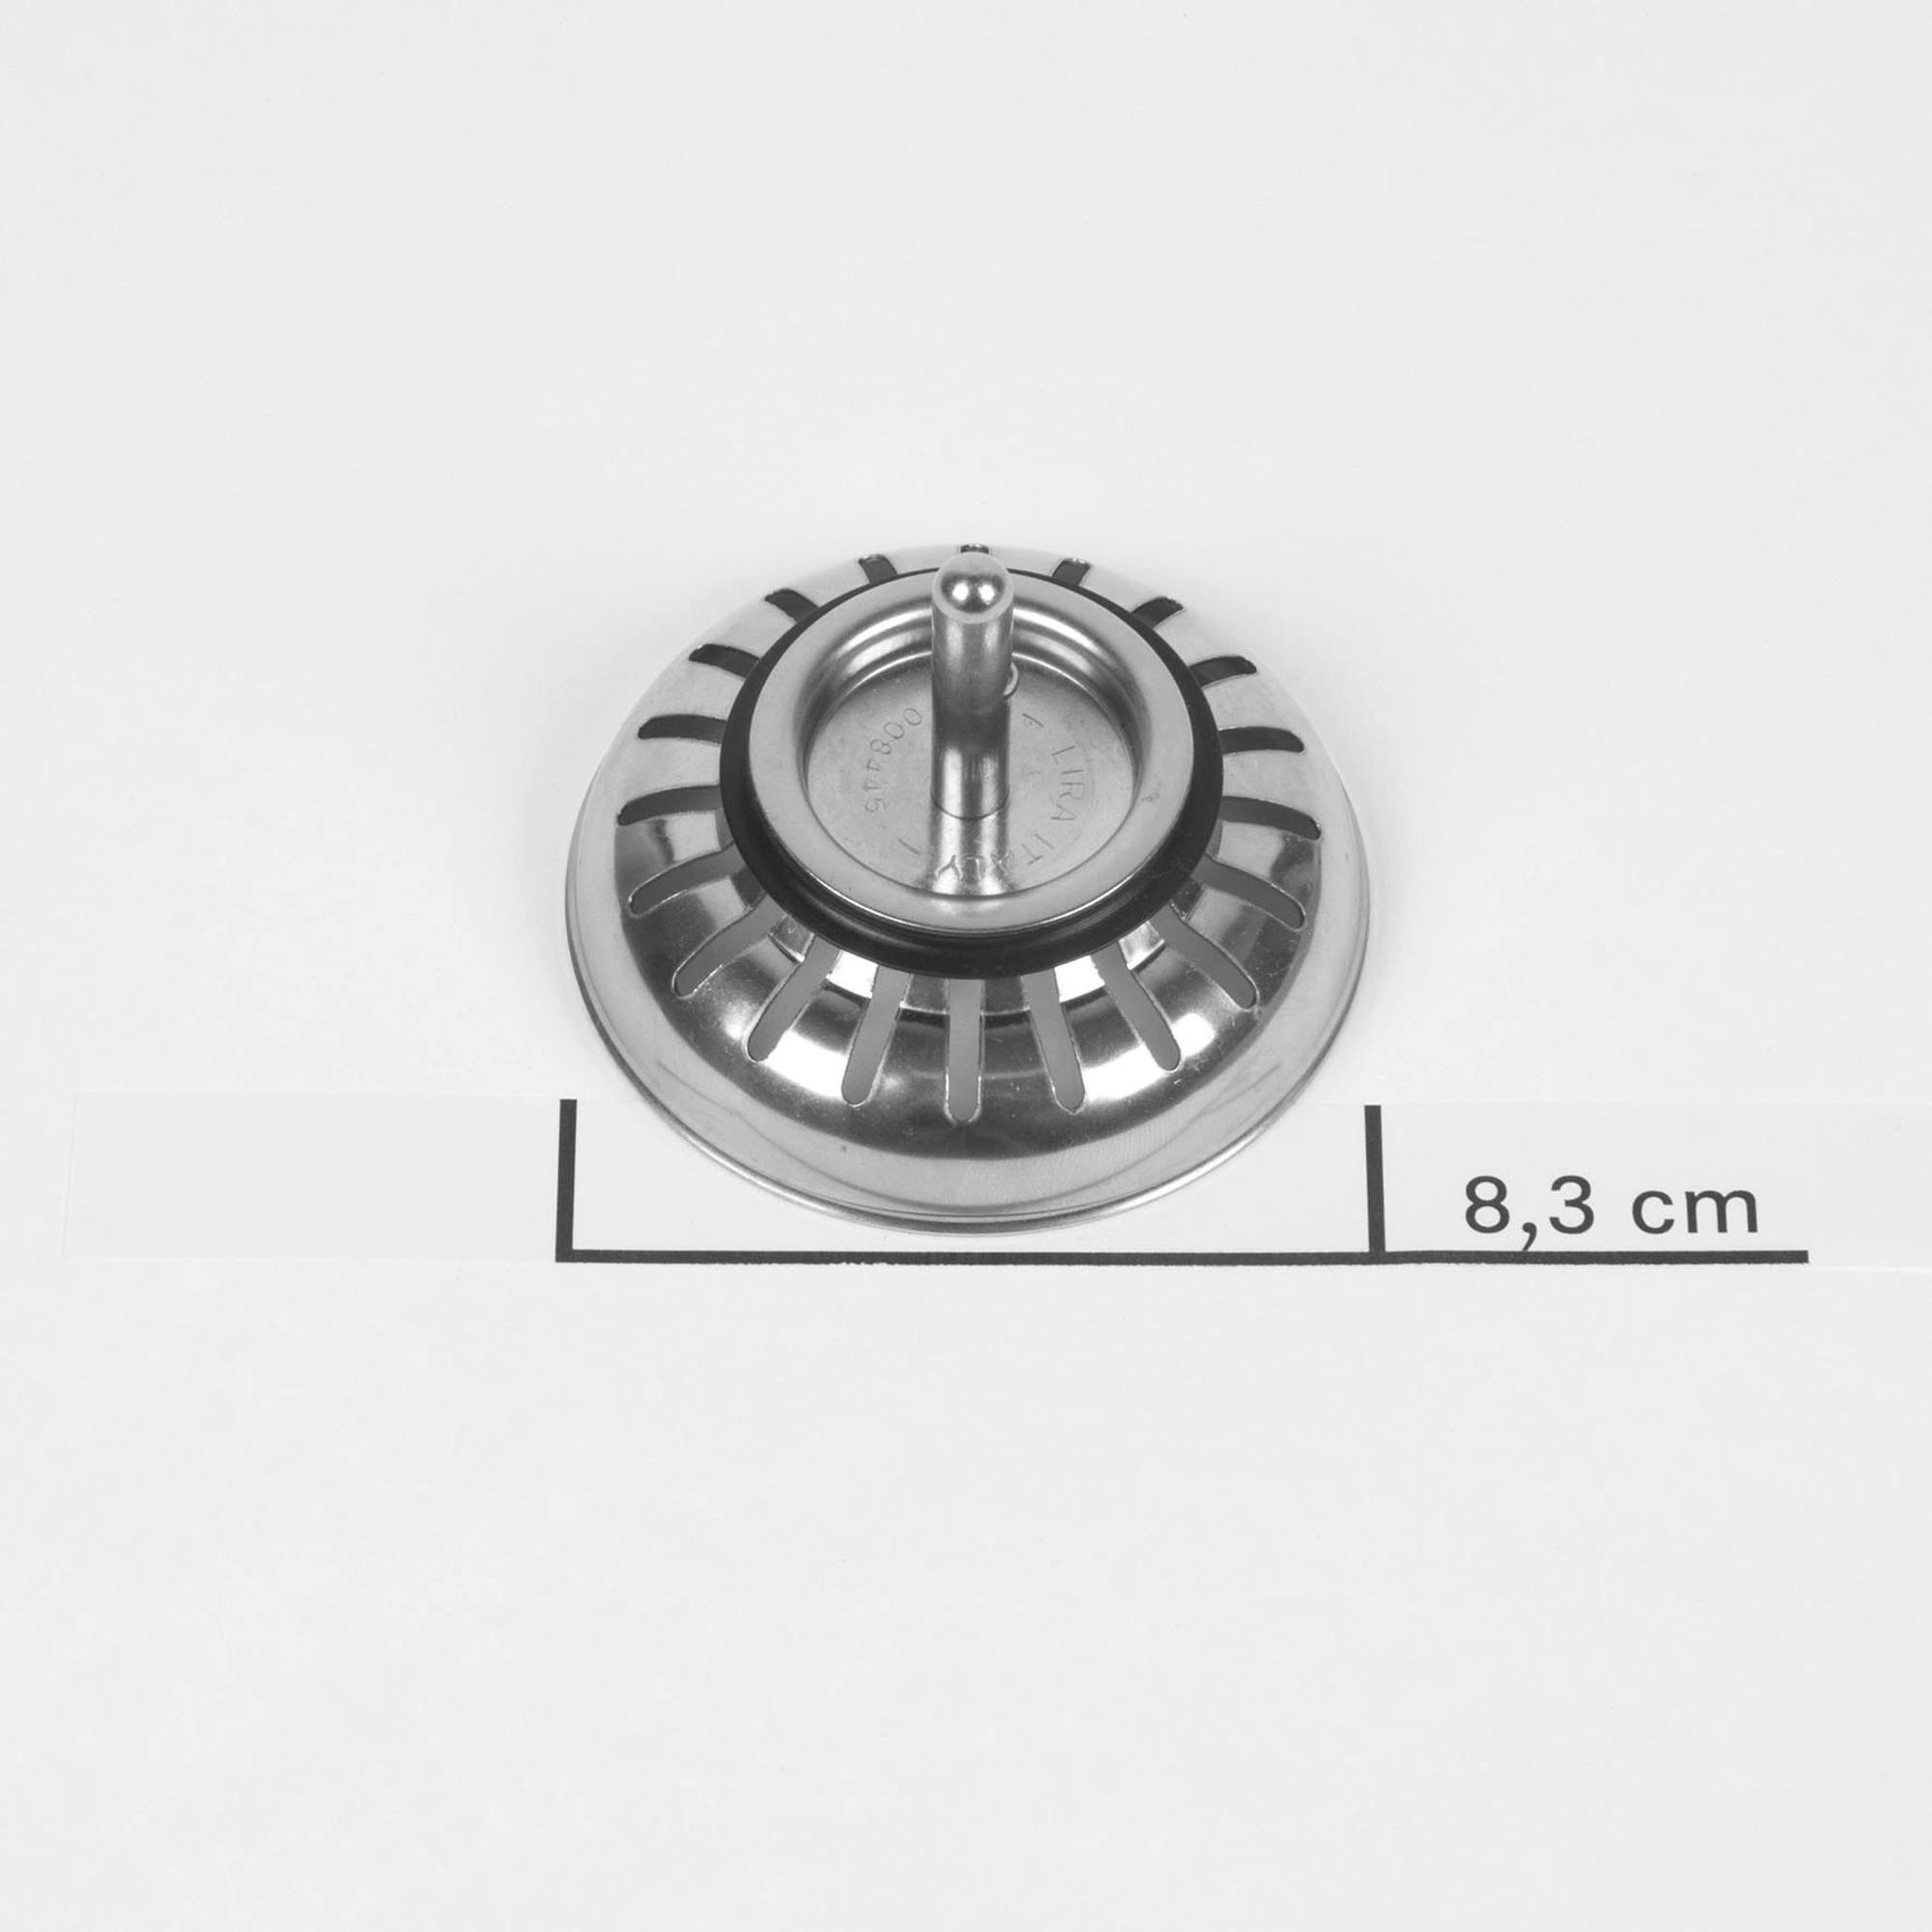 Franke bouchon évier 8,4 cm acier inoxydable - 133.0175.965 